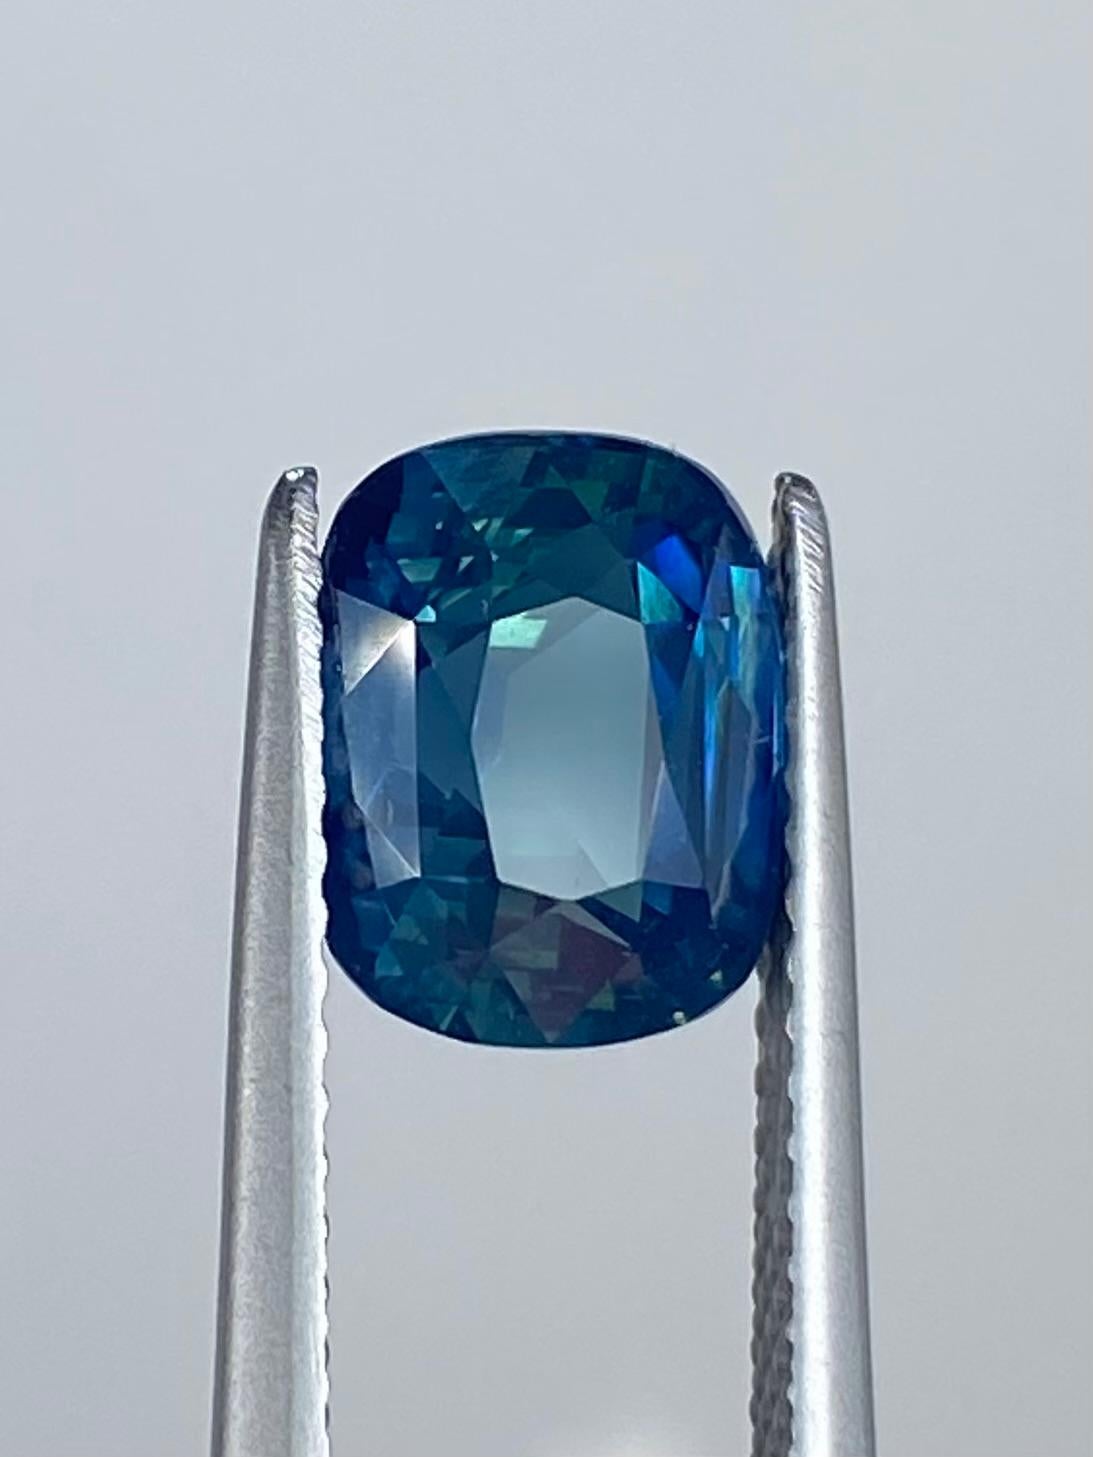 Le marchand de saphirs présente ce superbe saphir bleu sarcelle opalescent naturel. Cette pierre précieuse d'un poids impressionnant de 3,00 carats est présentée dans une forme coussin intemporelle qui rayonne d'élégance. Avec sa clarté VVS, il est